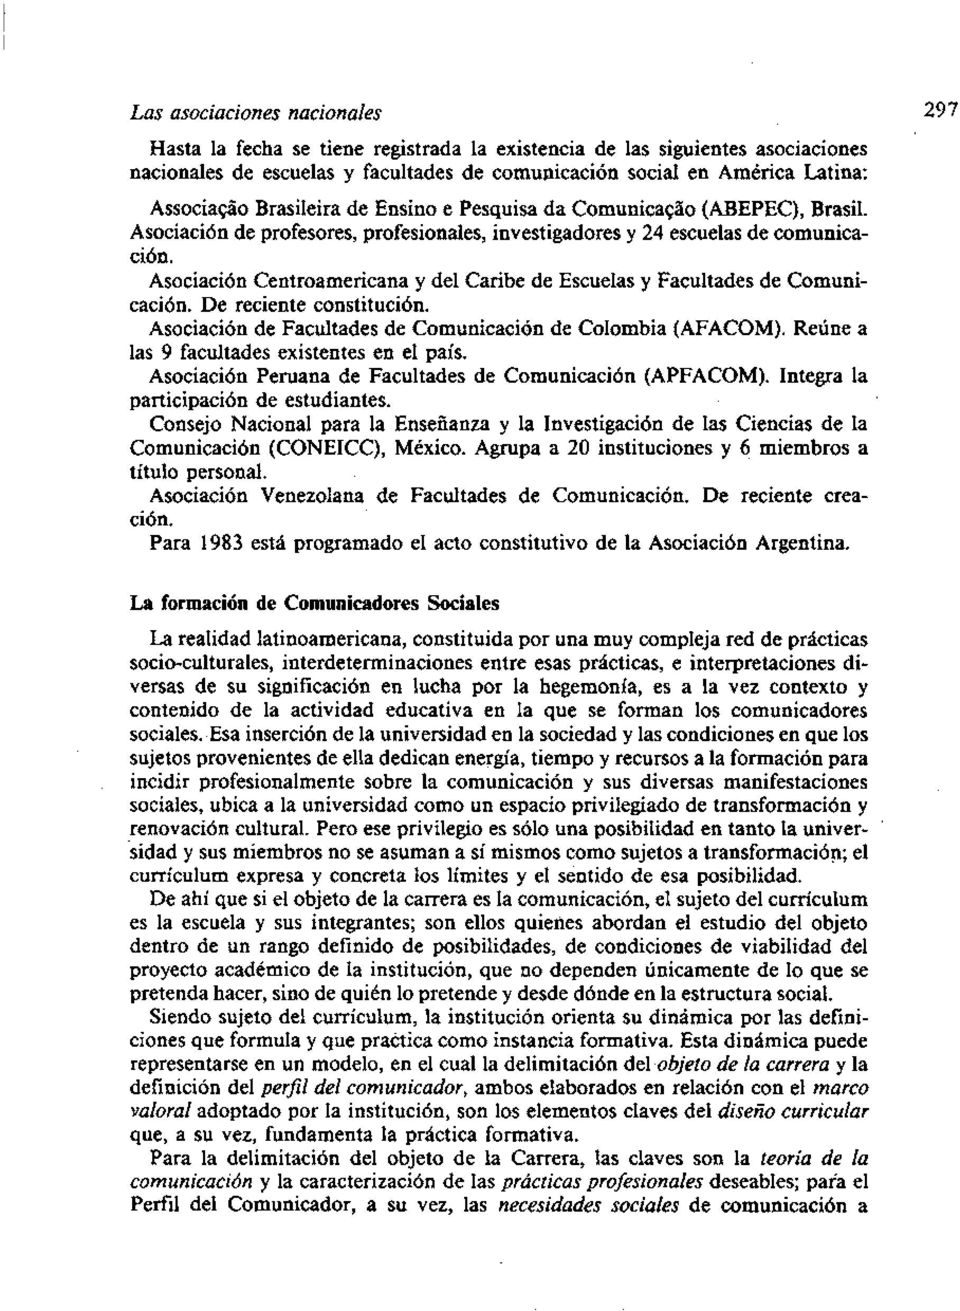 Asociación Centroamericana y del Caribe de Escuelas y Facultades de Comunicación. De reciente constitución. Asociación de Facultades de Comunicación de Colombia (AFACOM).